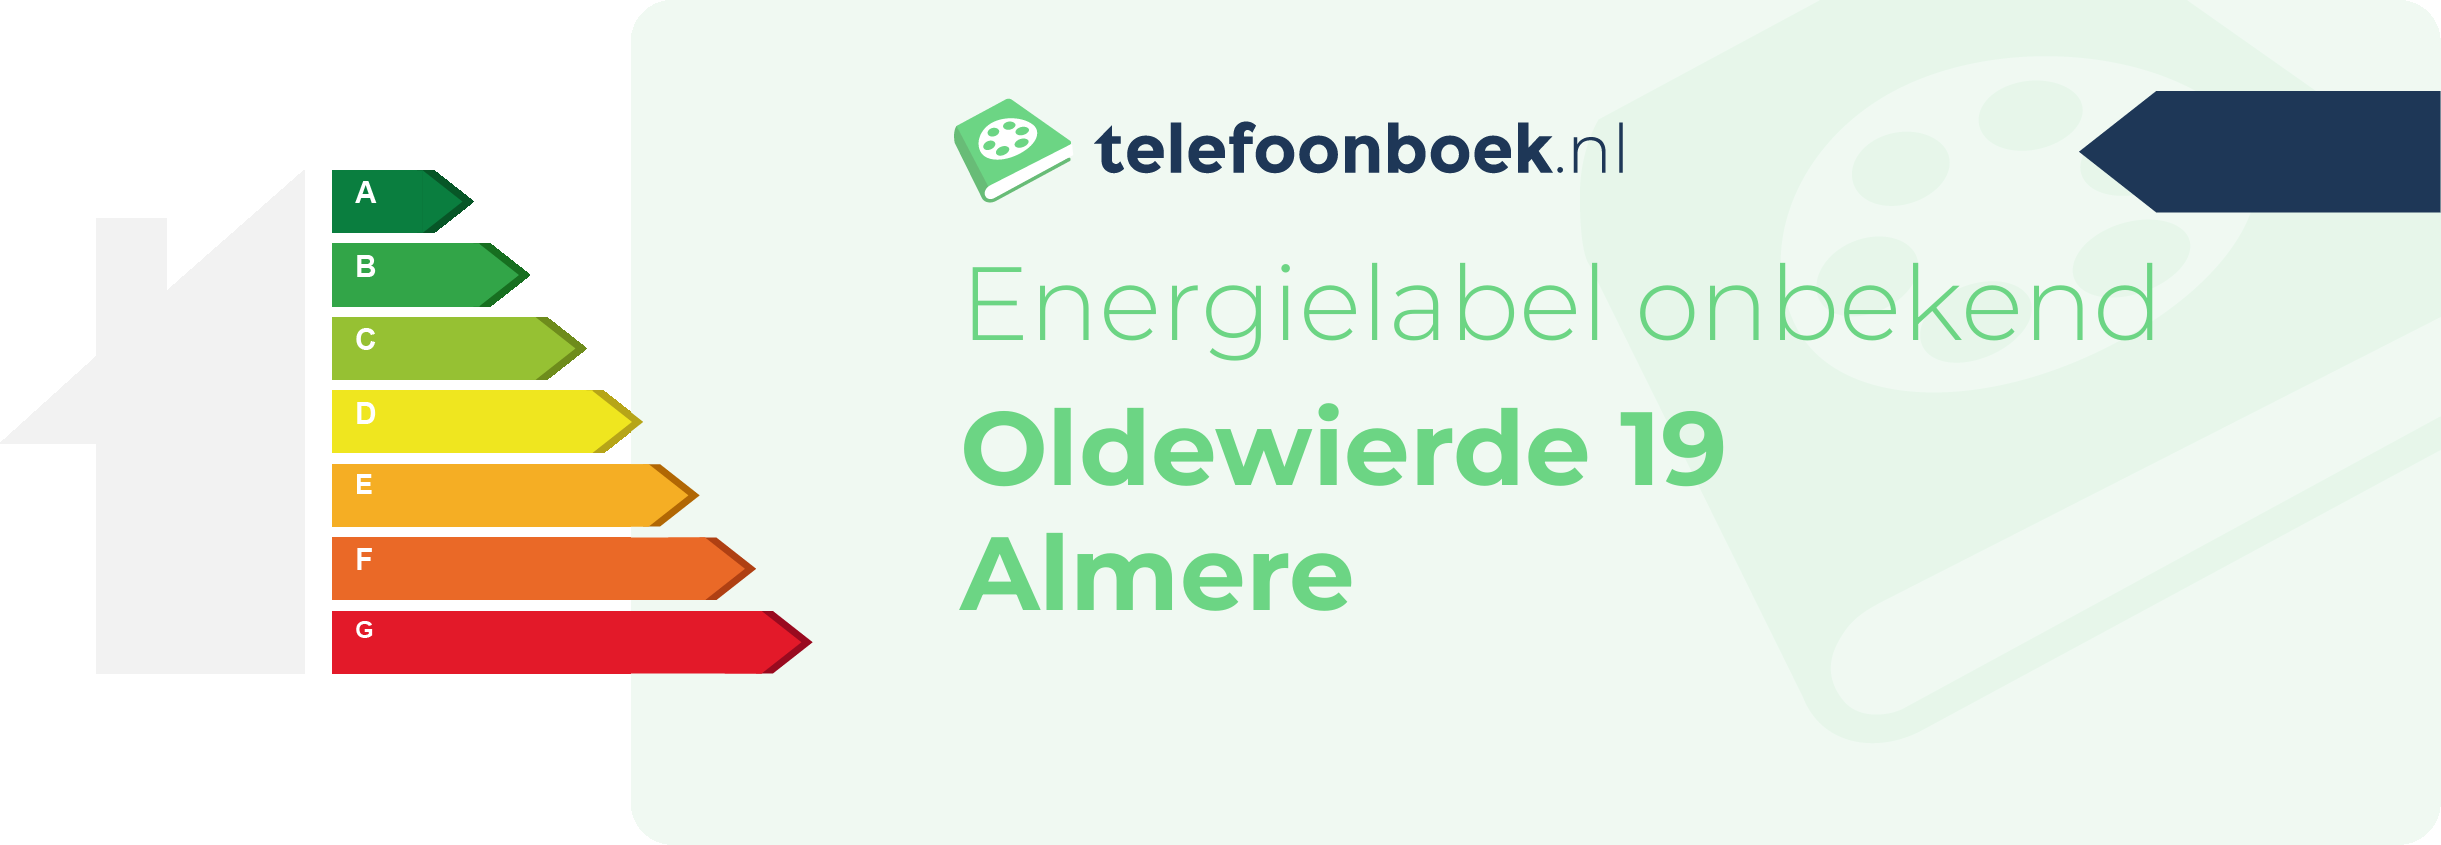 Energielabel Oldewierde 19 Almere